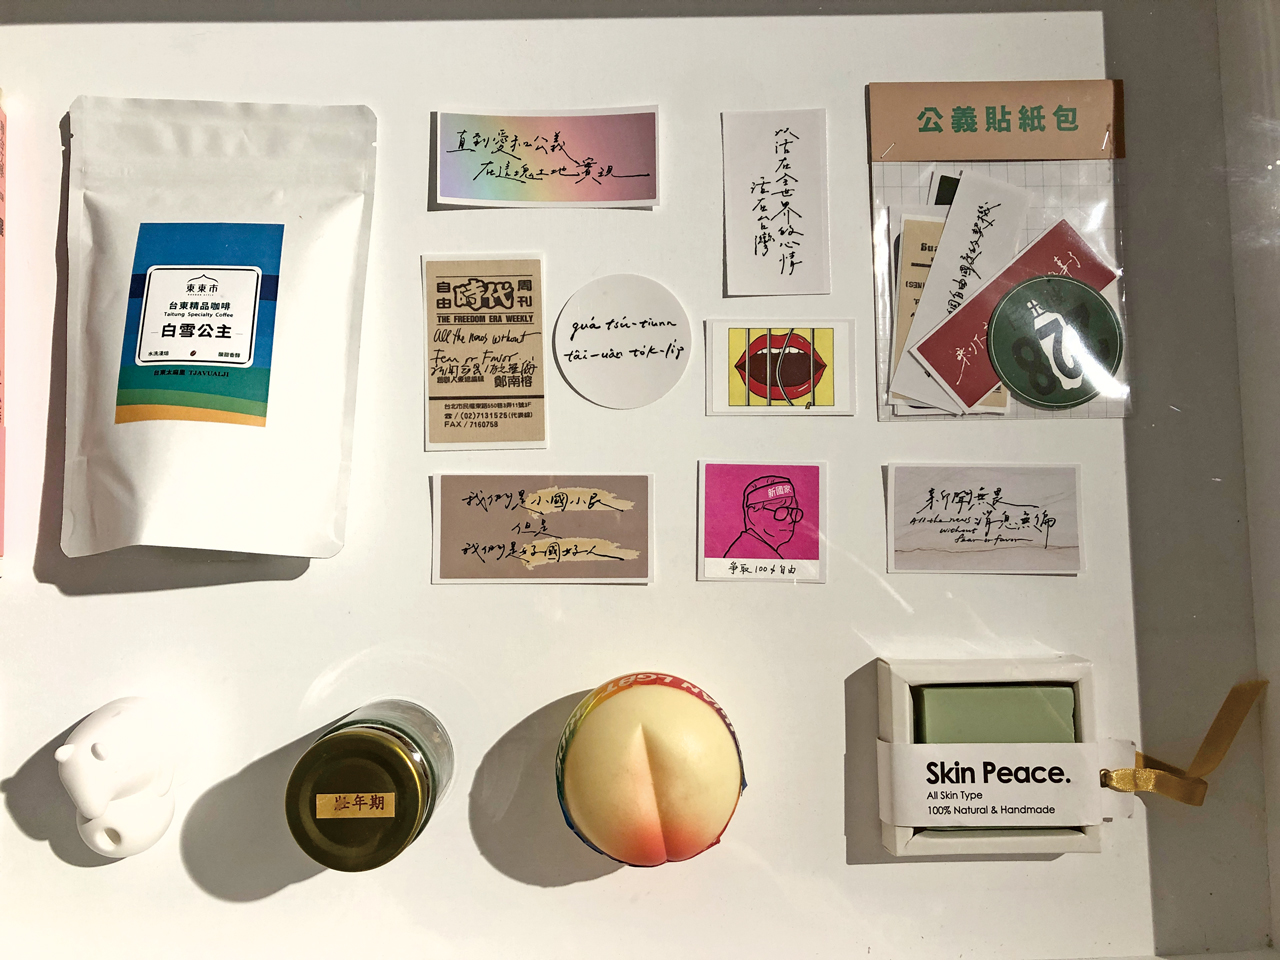 《加多雙筷》展場展示台灣民眾送給vawongsir的禮物。